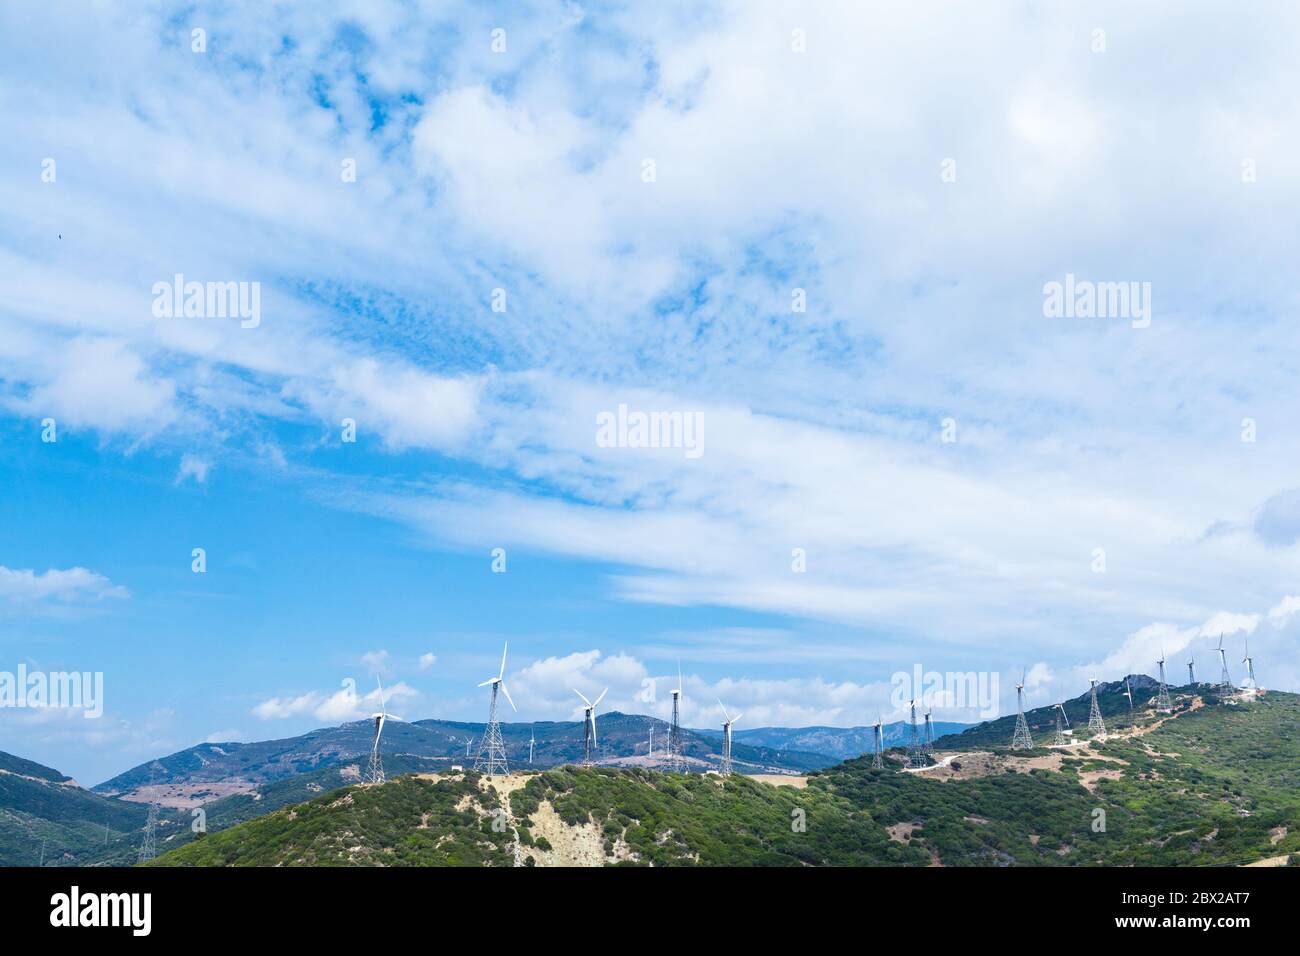 Una cadena de molinos de viento en la ladera de una montaña en el Mediterráneo Foto de stock